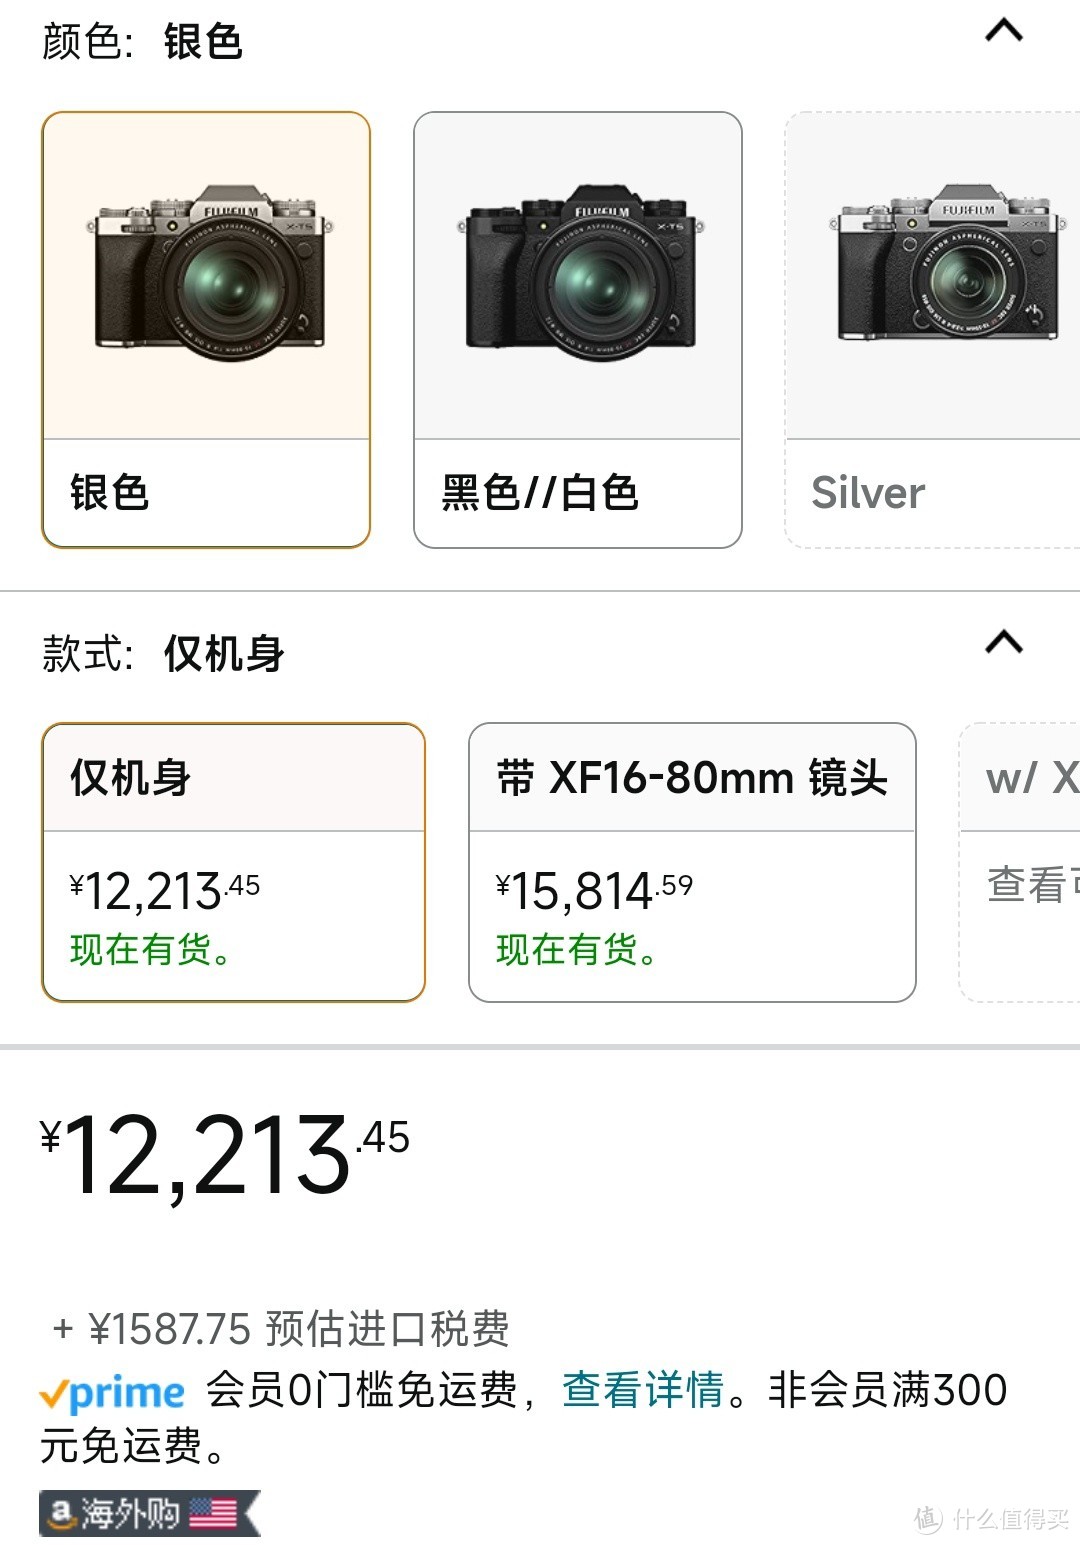 Fujifilm 富士 无反光镜数码相机系统 X-T5 XF18-55mm套装 - 黑色 4320p 黑色 包含相机机身和镜头